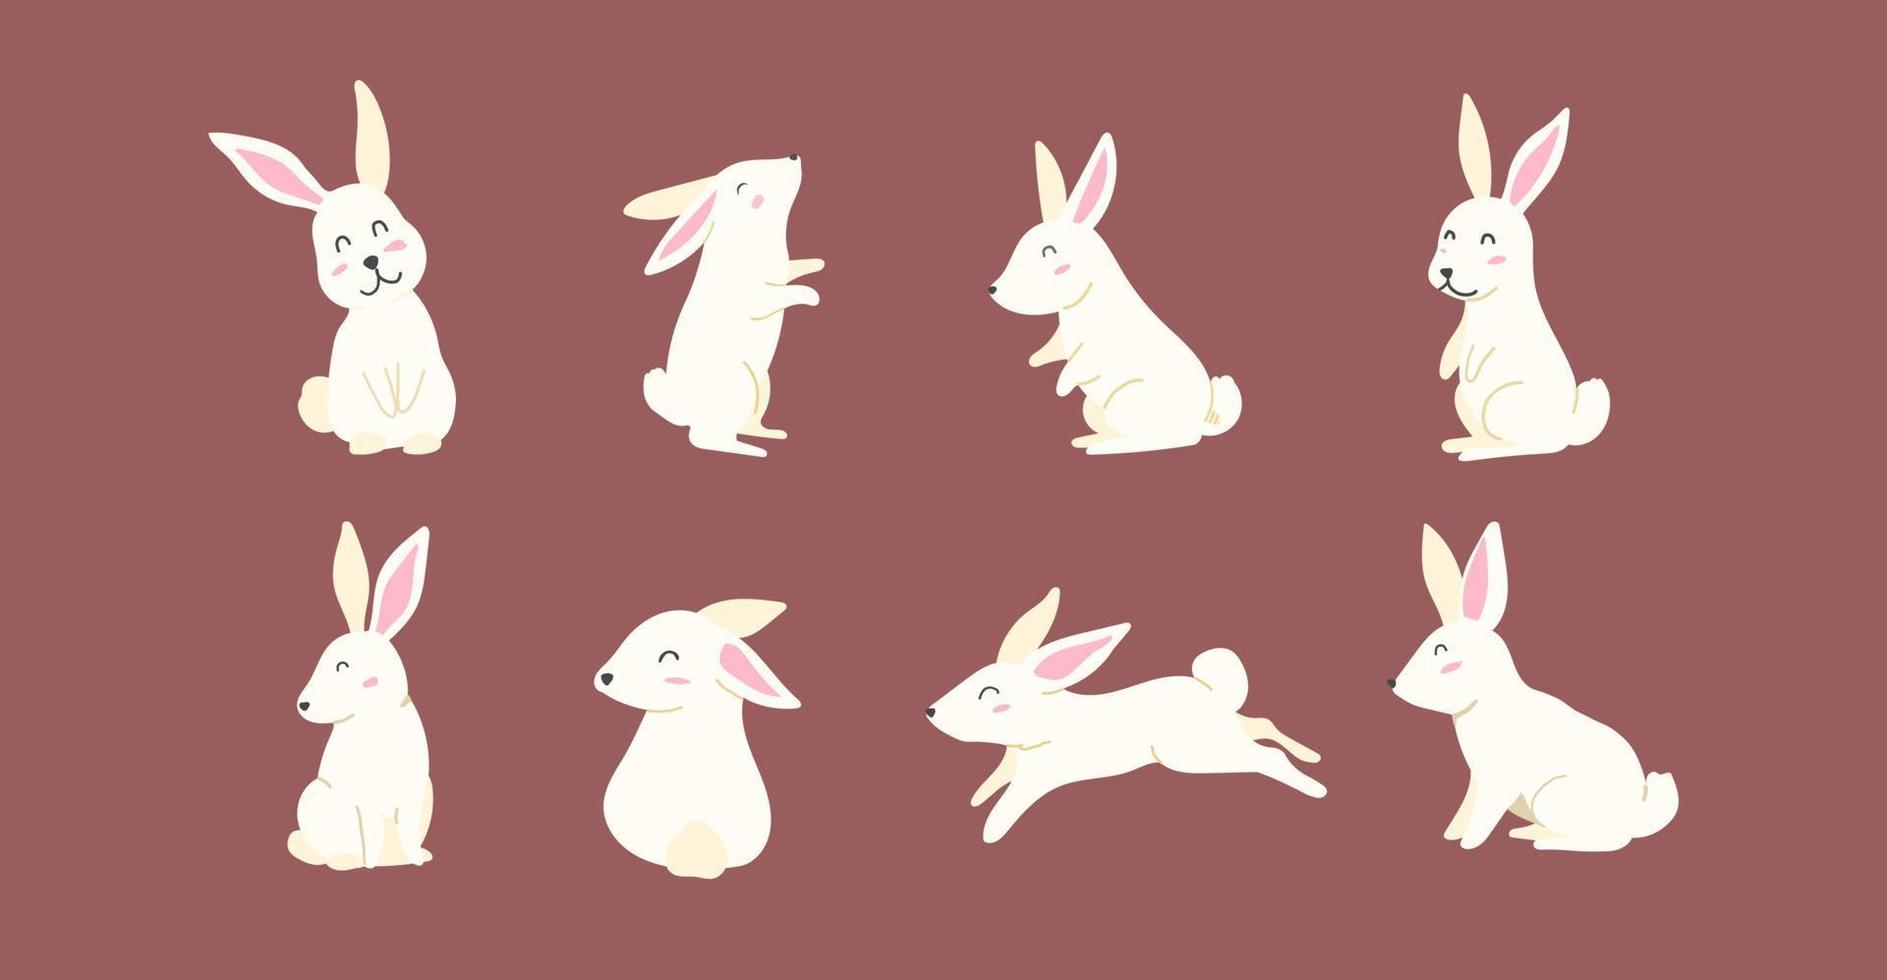 collezione disegnata a mano per pasqua con simpatici coniglietti. buona pasqua fumetto illustrazione vettoriale